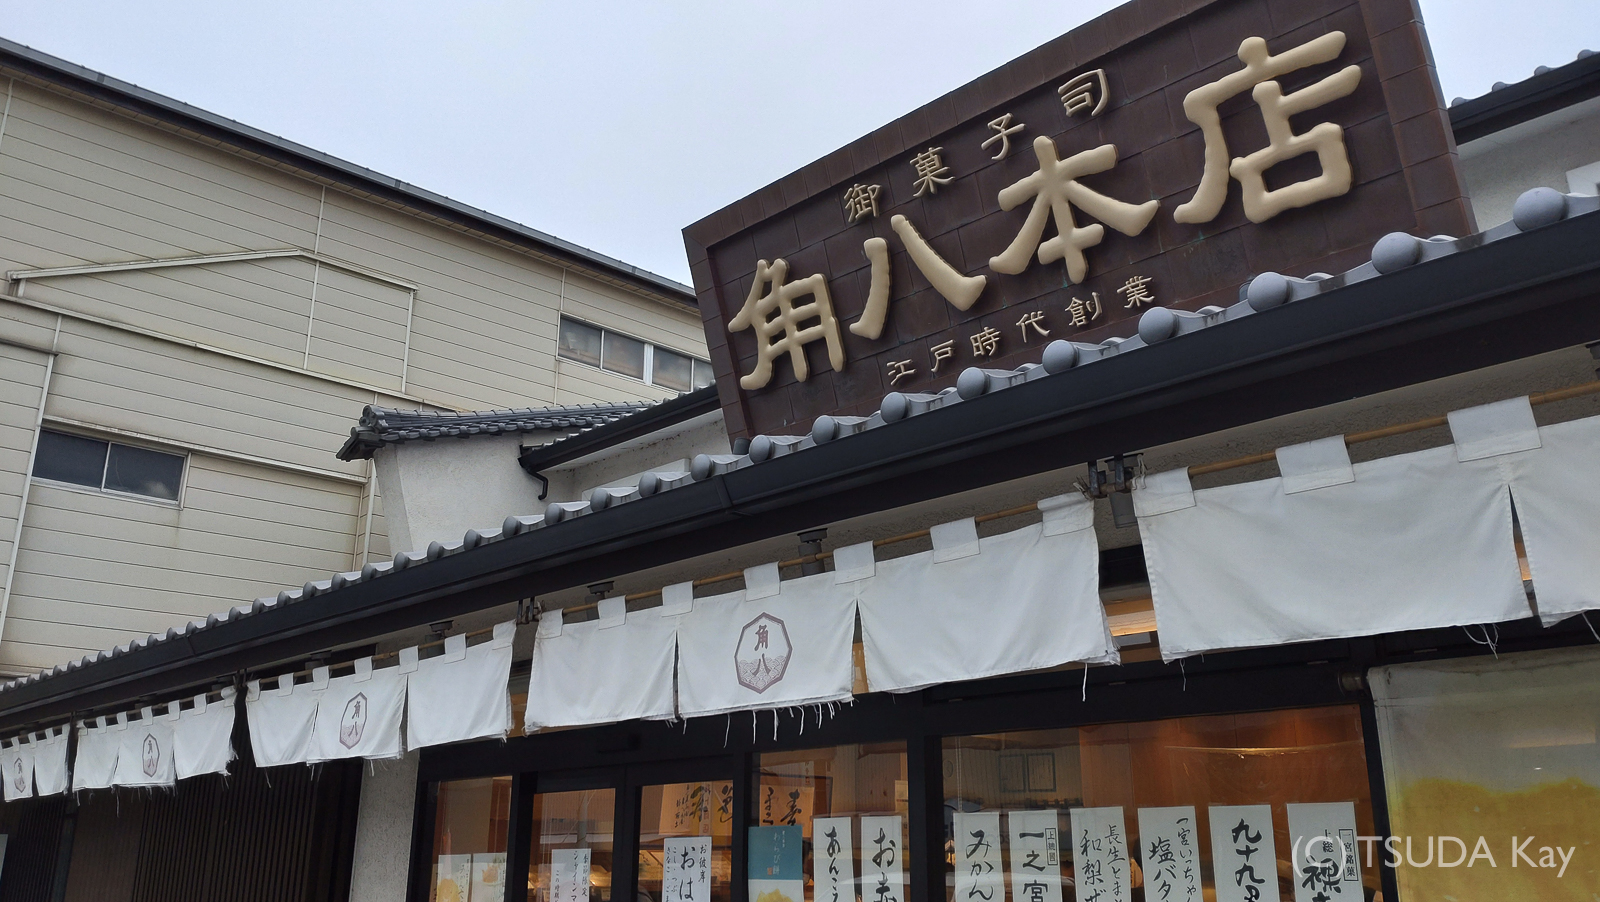 I visited ichinomiya 01